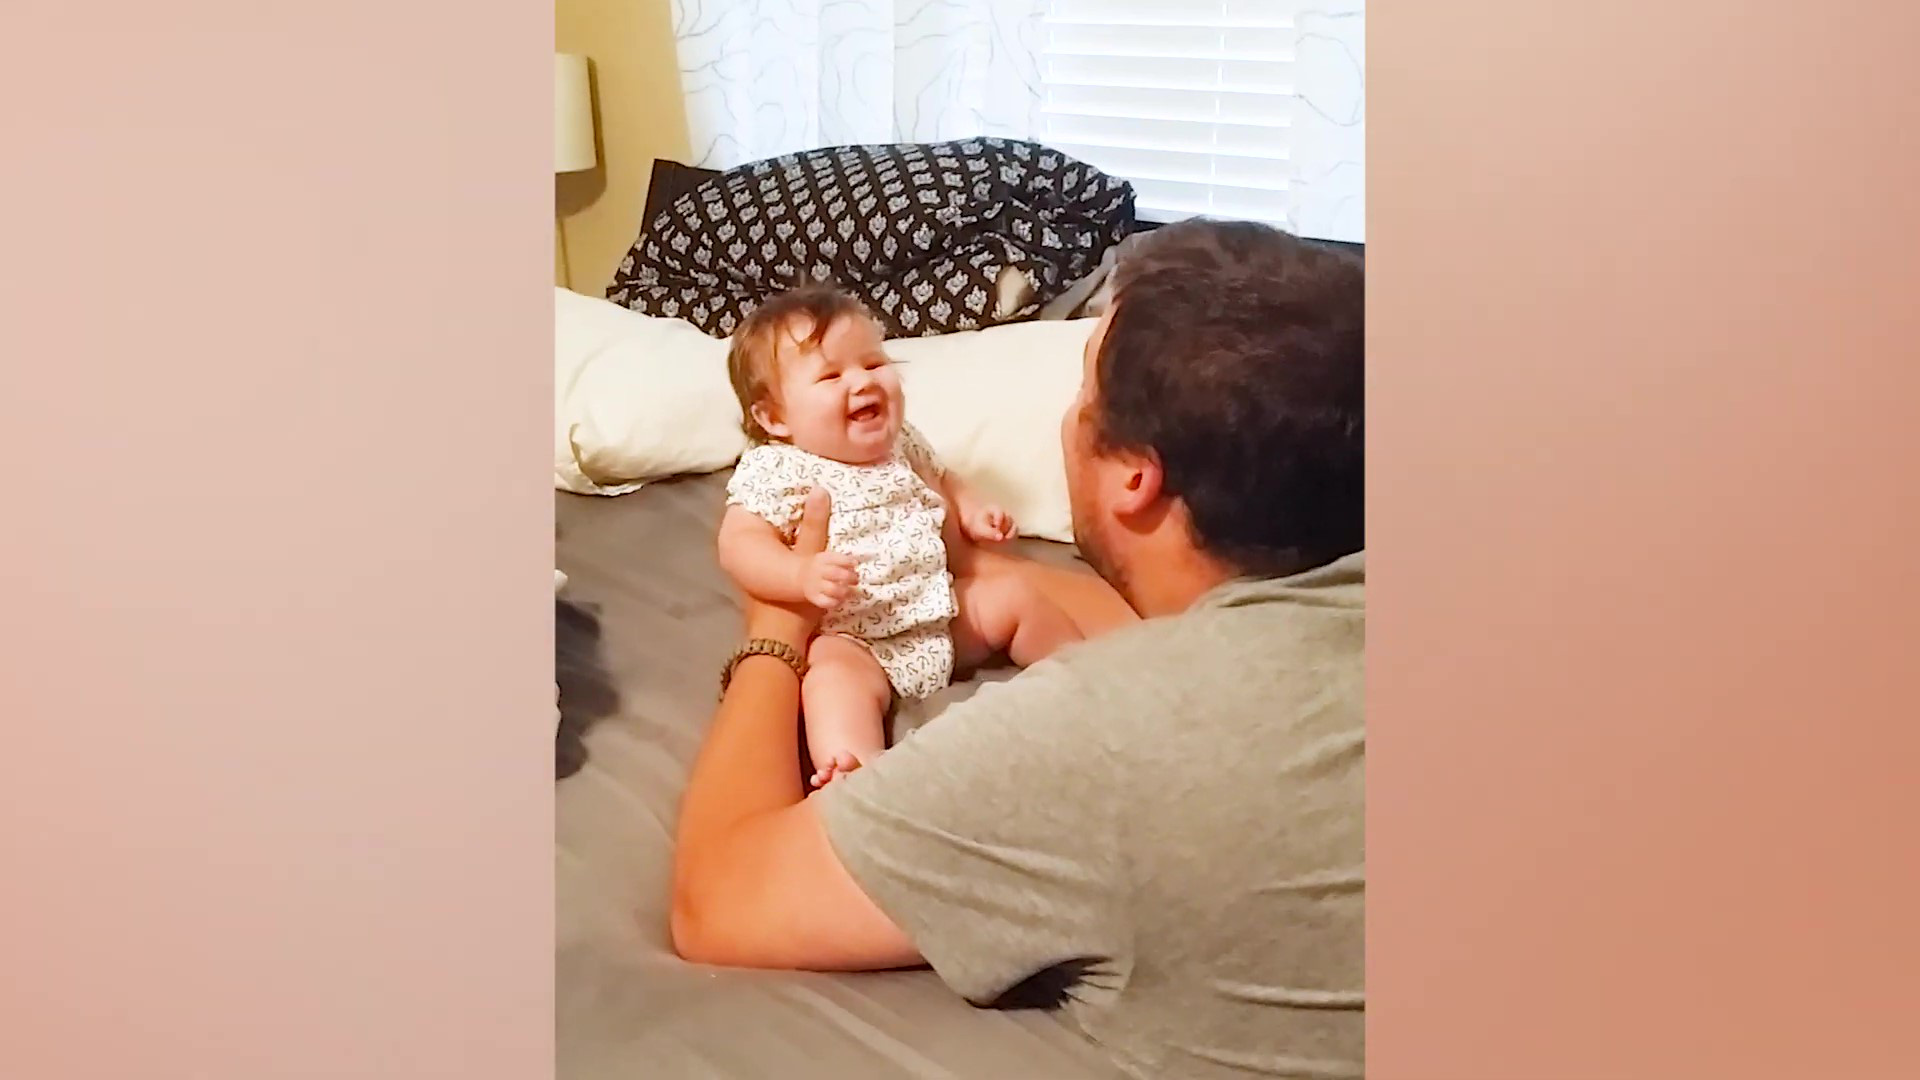 Video: &quot;Tan chảy&quot; với những tiếng cười trẻ thơ khi chơi với bố - Ảnh 5.